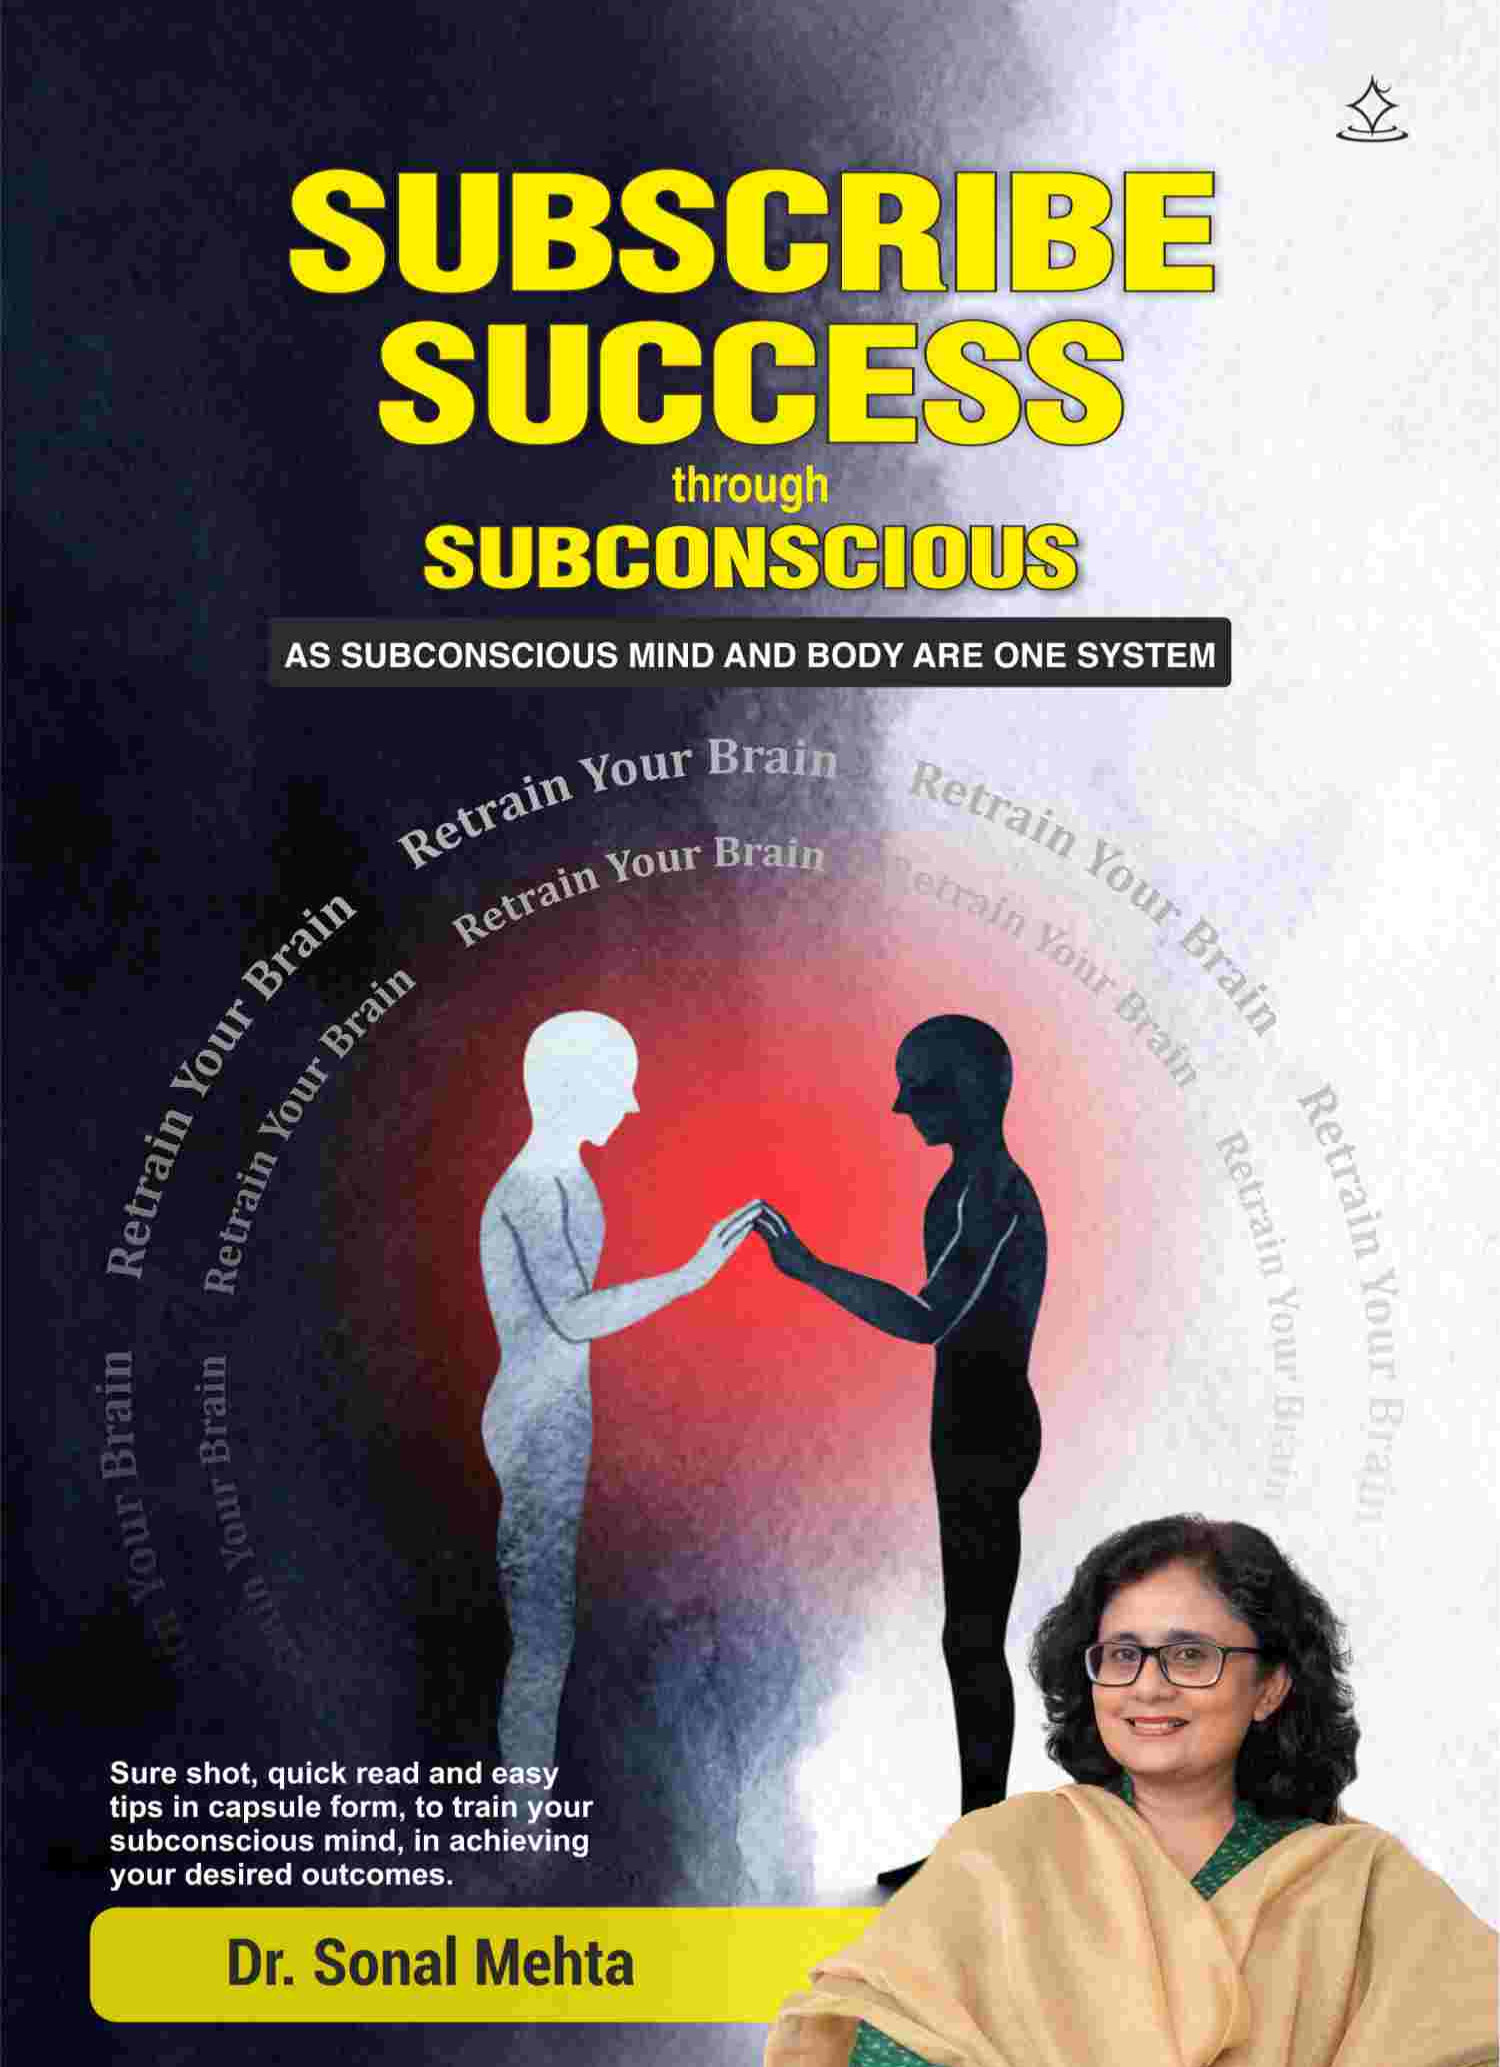 SUBSCRIBE SUCCESS through SUBCONSCIOUS